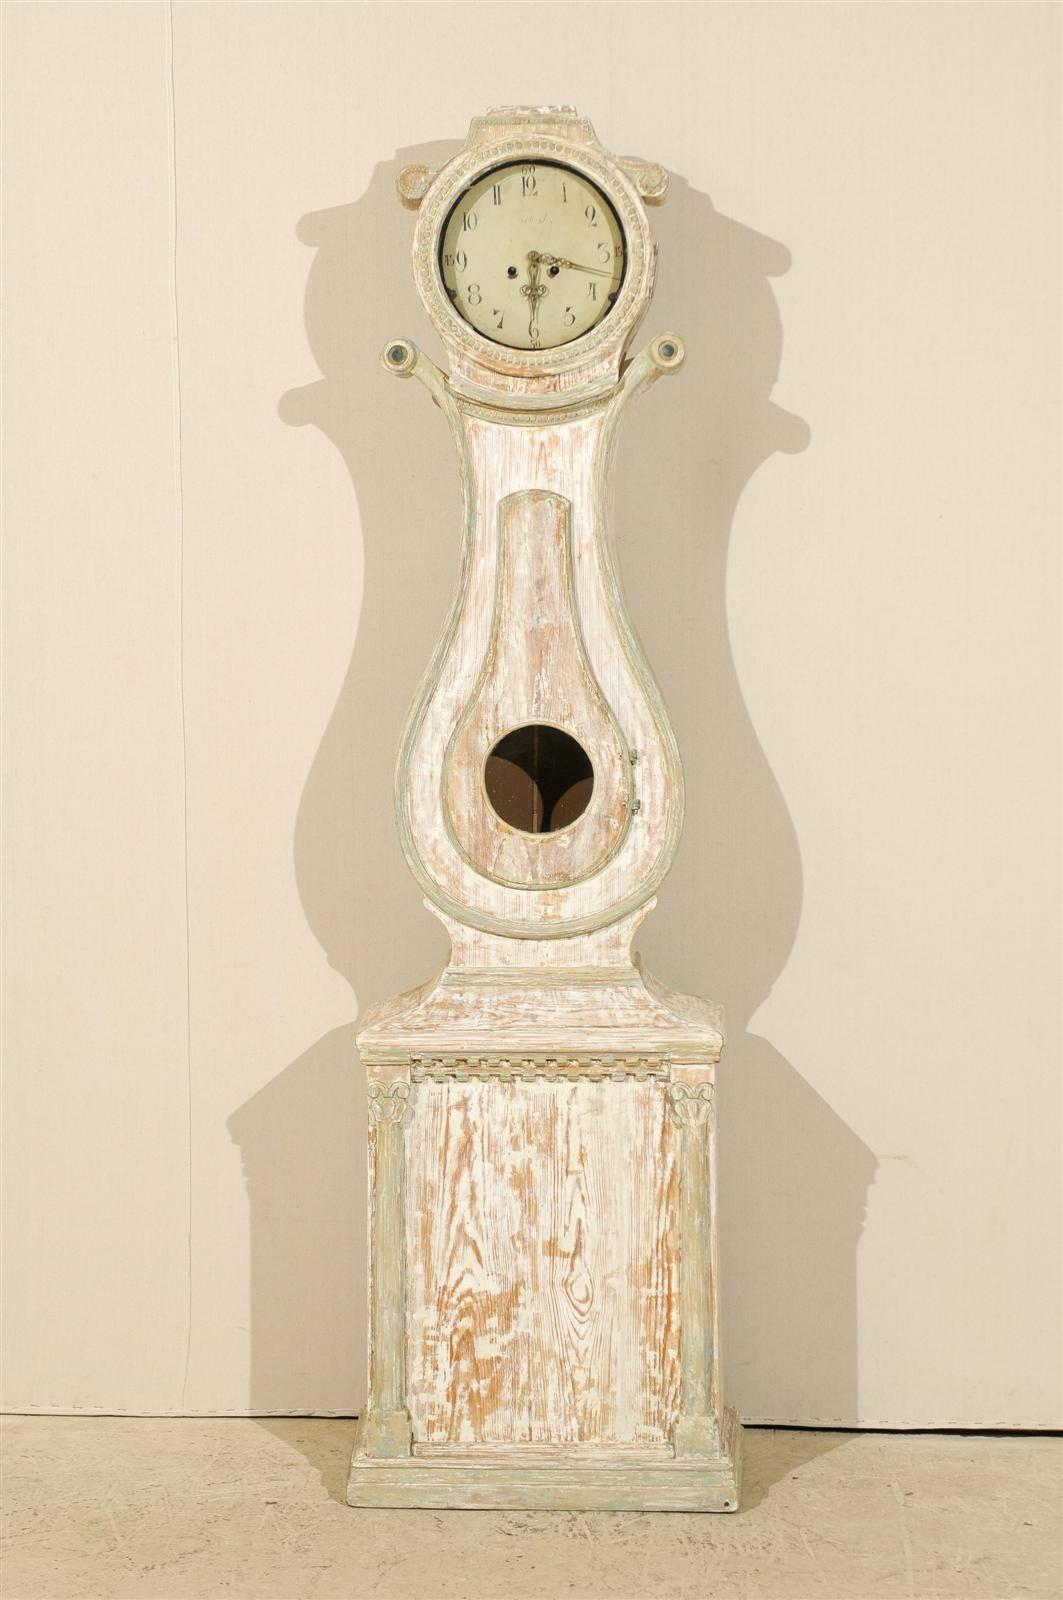 Eine schwedische Uhr aus bemaltem Holz aus dem 19. Jahrhundert mit Voluten auf beiden Seiten des Kopfes. Diese Uhr hat einen leierförmigen Korpus und einen rechteckigen Sockel, der von zwei stilisierten korinthischen Säulen flankiert wird. Diese Uhr